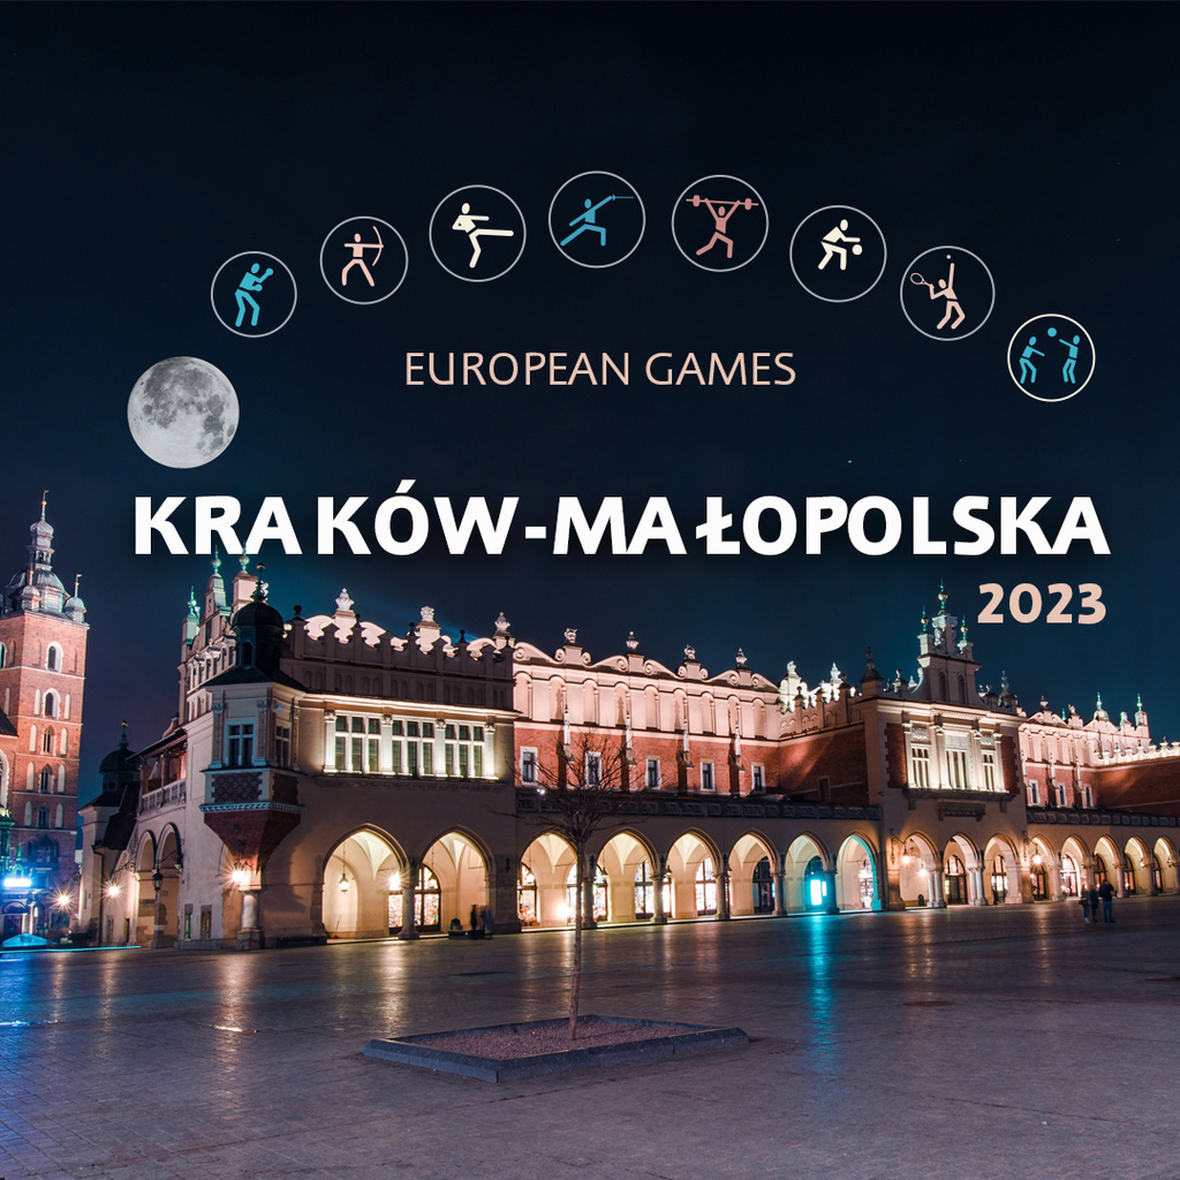 KRAKÓW-MAŁOPOLSKA Europese Spelen 2023